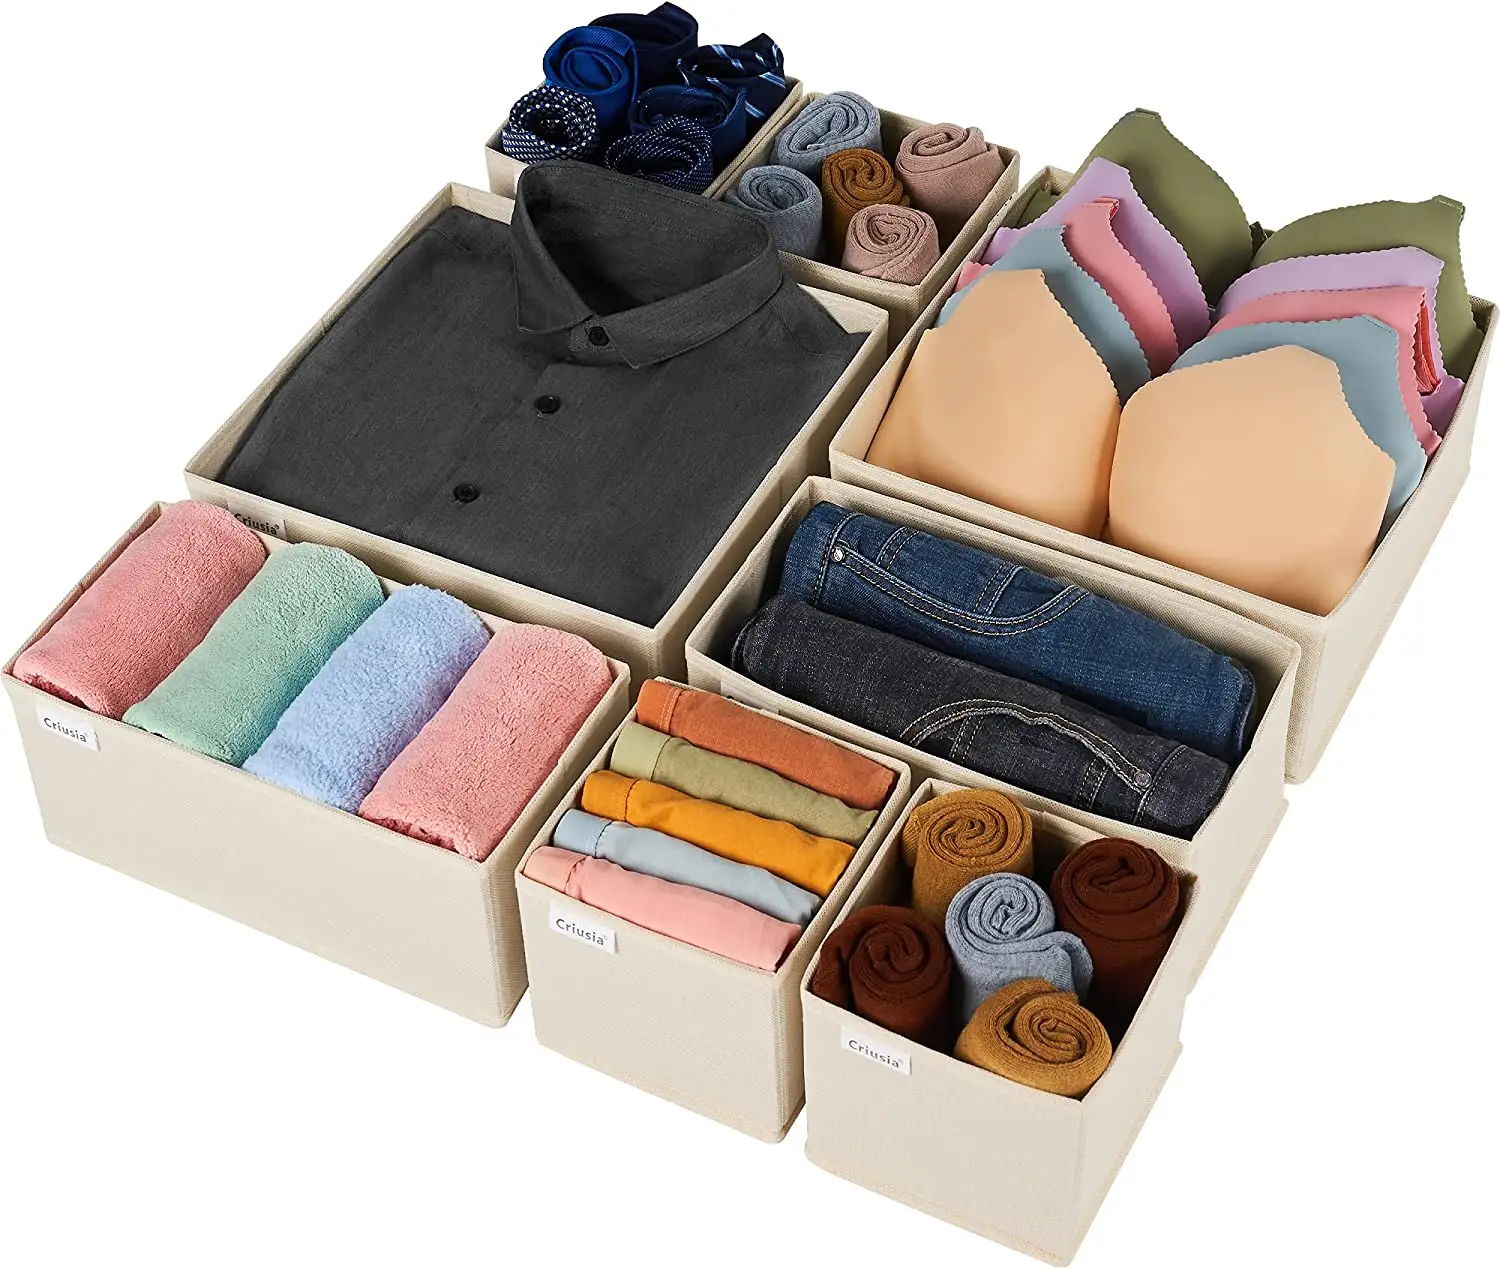 Recipientes para armazenamento e organização de armários, com 8 pacotes, para itens domésticos, incluindo sutiãs, roupas íntimas, organizador doméstico para armazenamento de armários